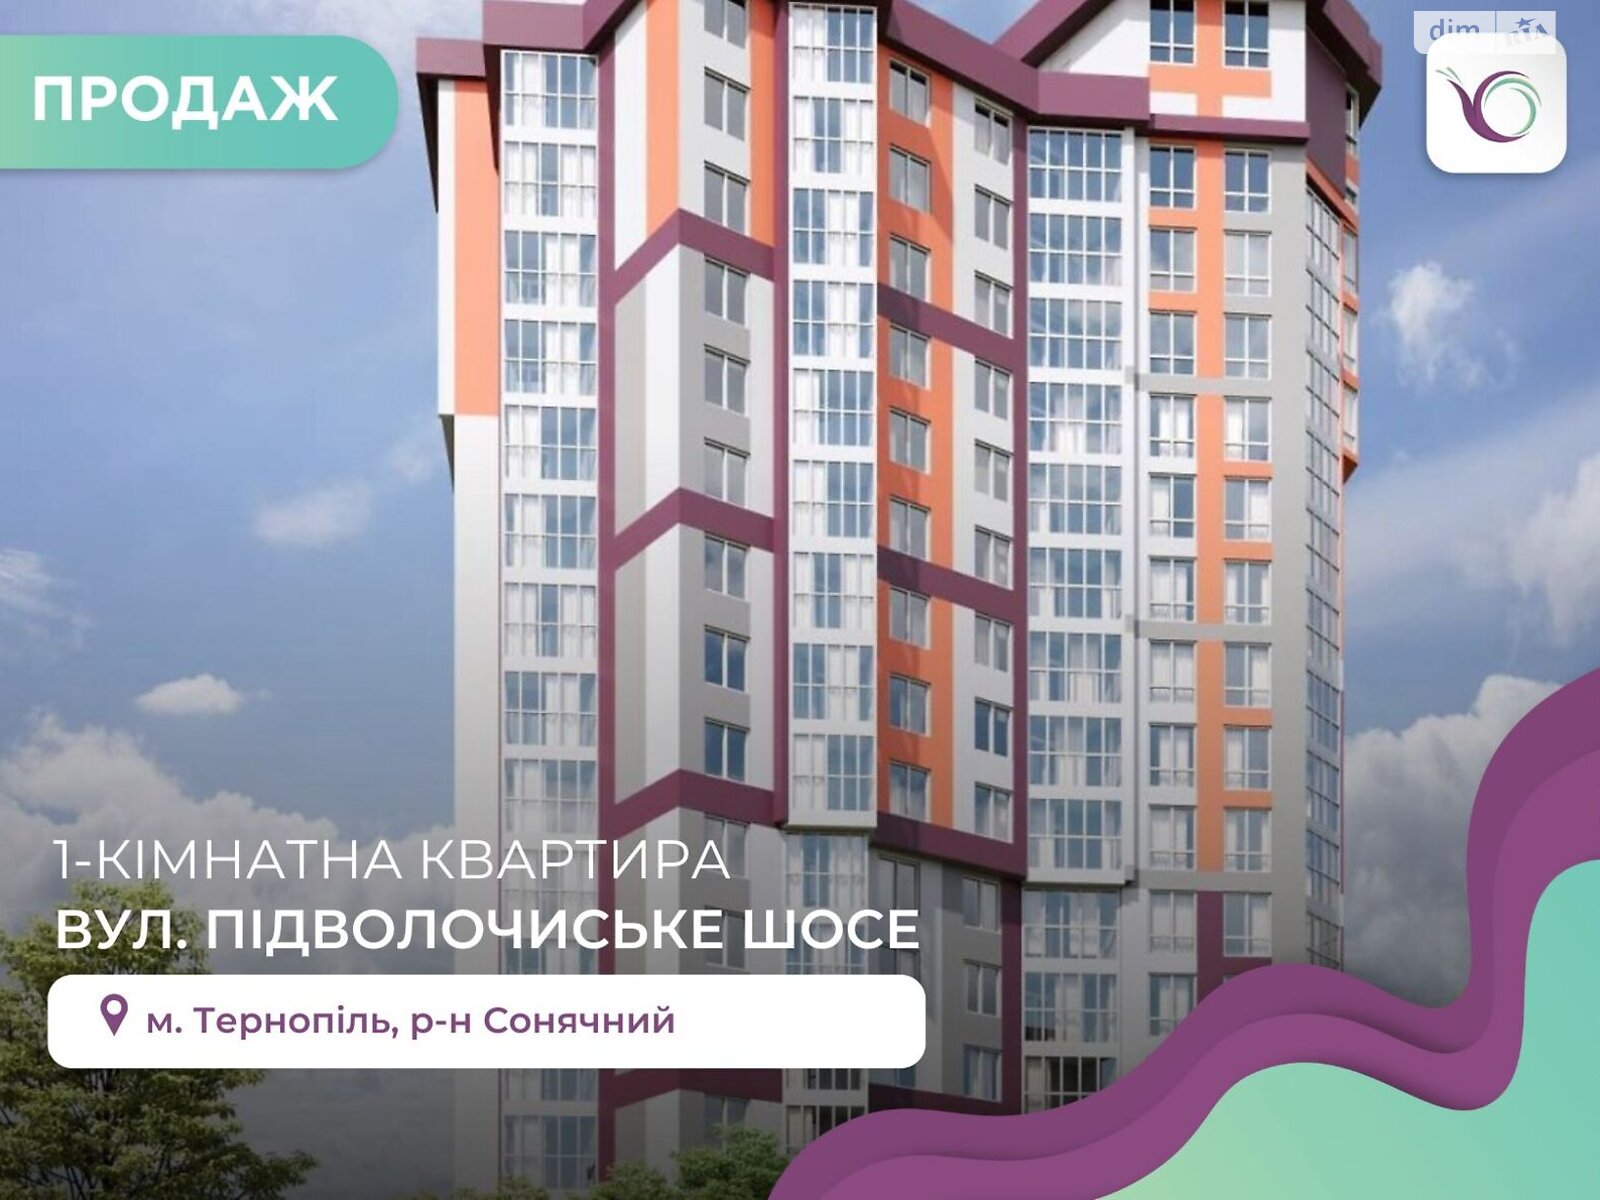 Продажа однокомнатной квартиры в Тернополе, на ул. Подволочиское шоссе, фото 1